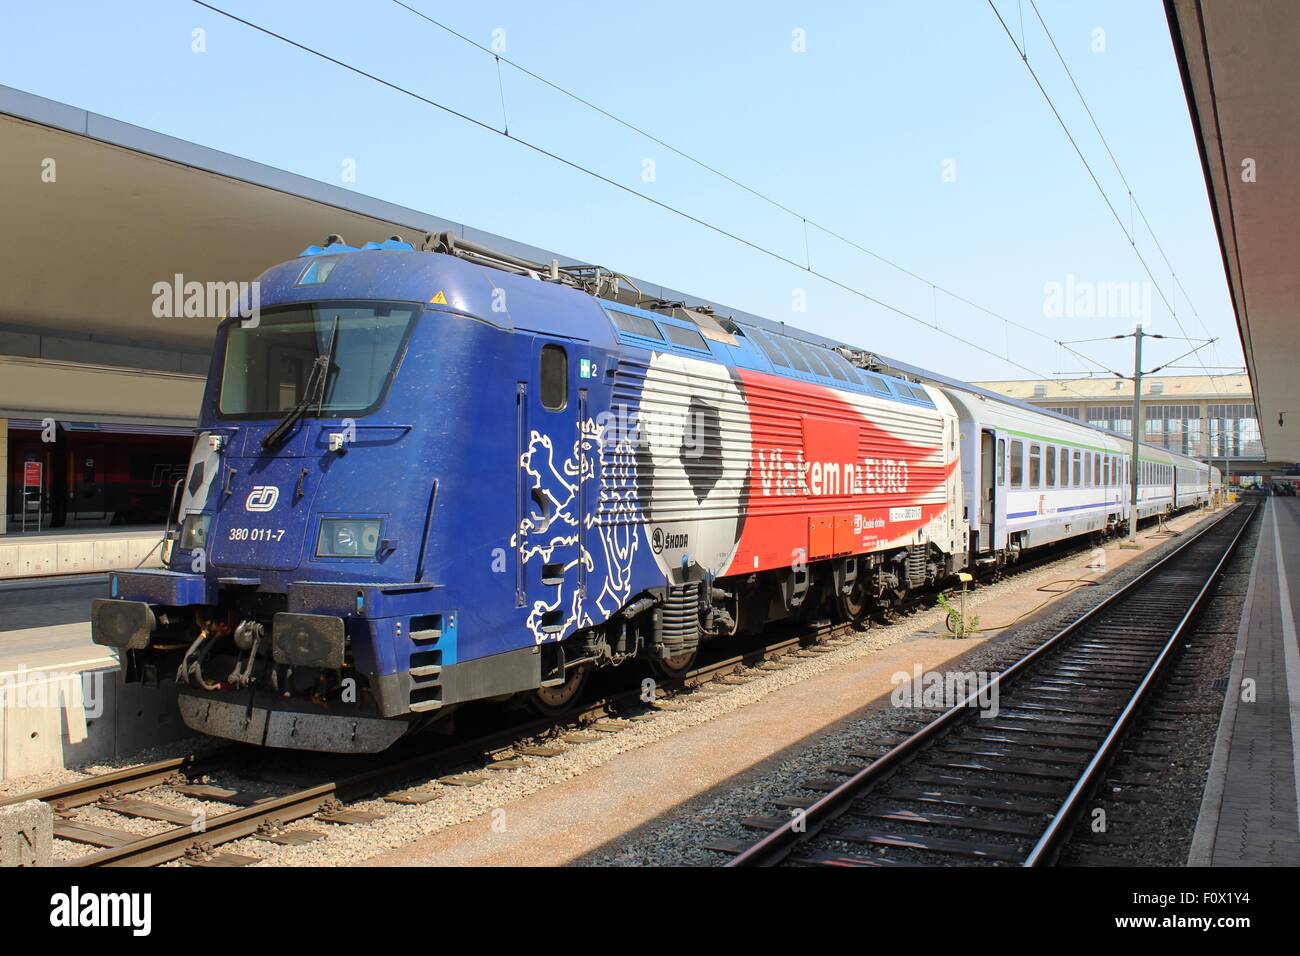 Les chemins de fer tchèques electric locomotive 380 011-7 à la gare Westbahnhof de Vienne, en Autriche avec un train pour Varsovie. Banque D'Images